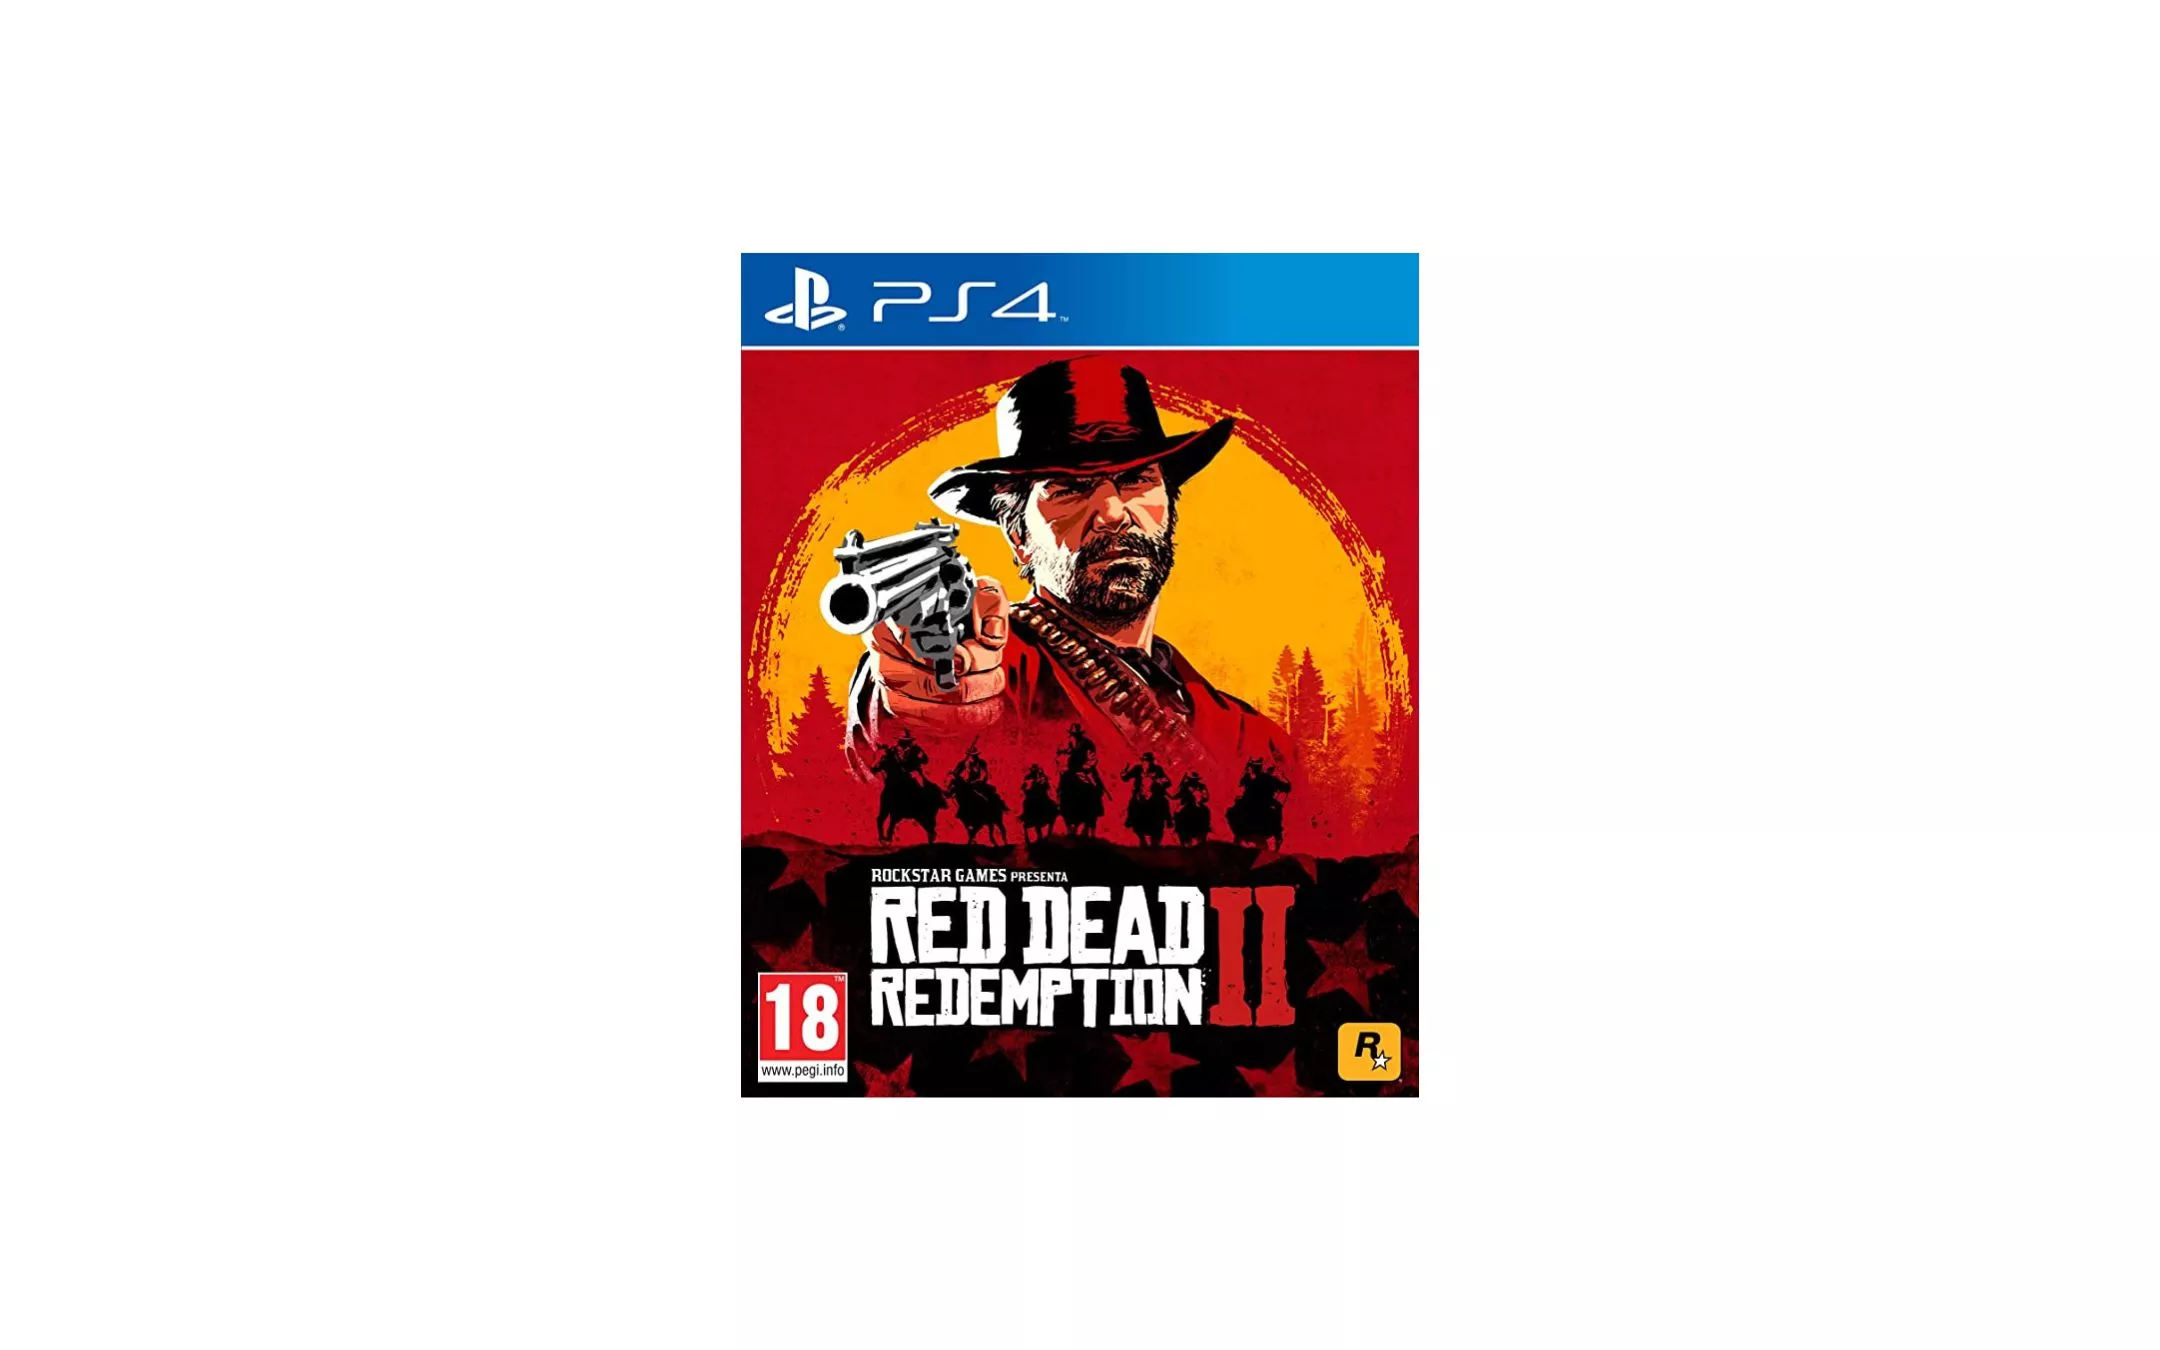 Red Dead Redemption 2: sconto FOLLE del 68%, correte!